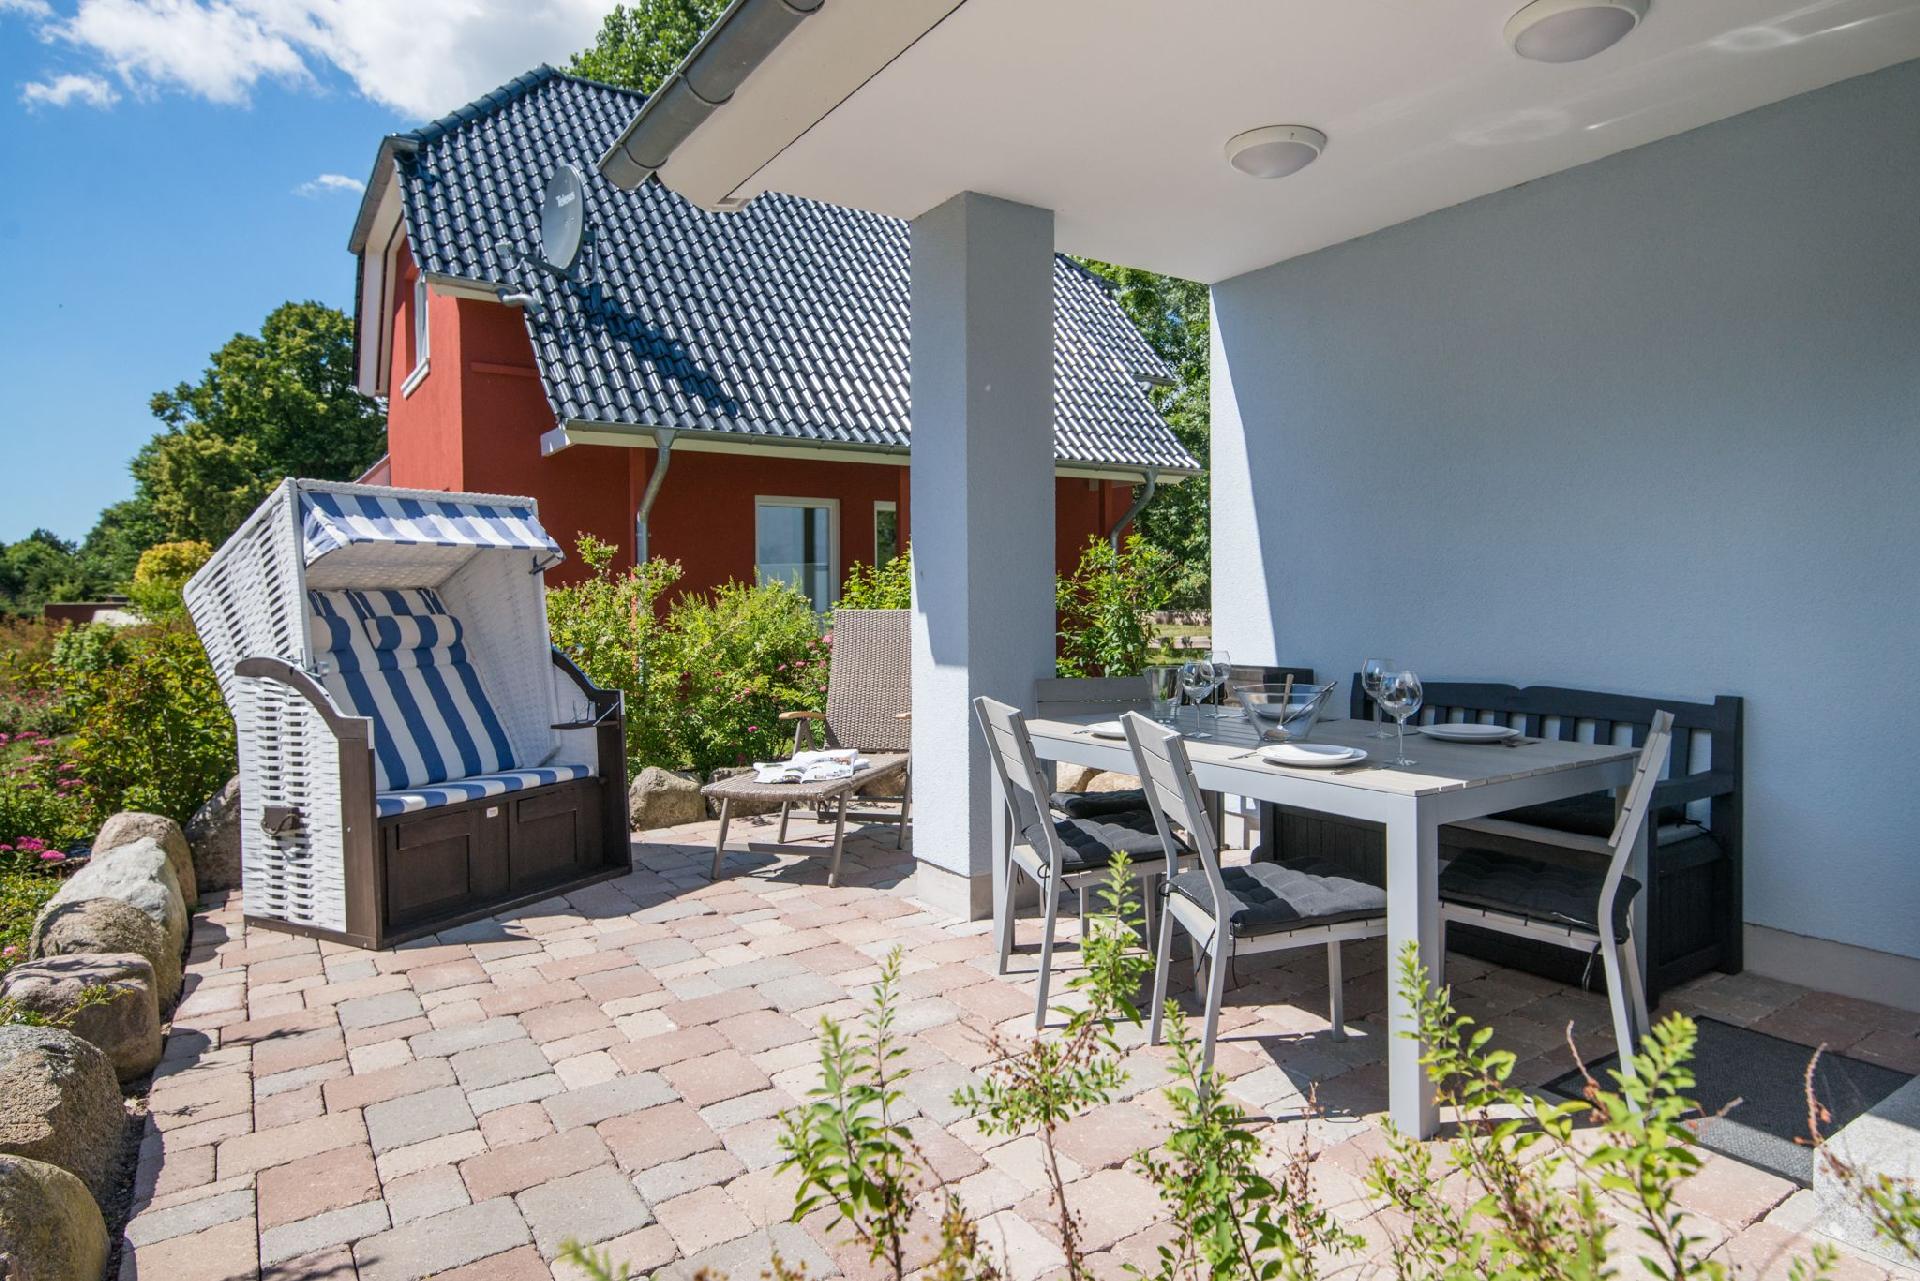 Ferienhaus mit Sauna, Grill und Terrasse Ferienhaus in Deutschland